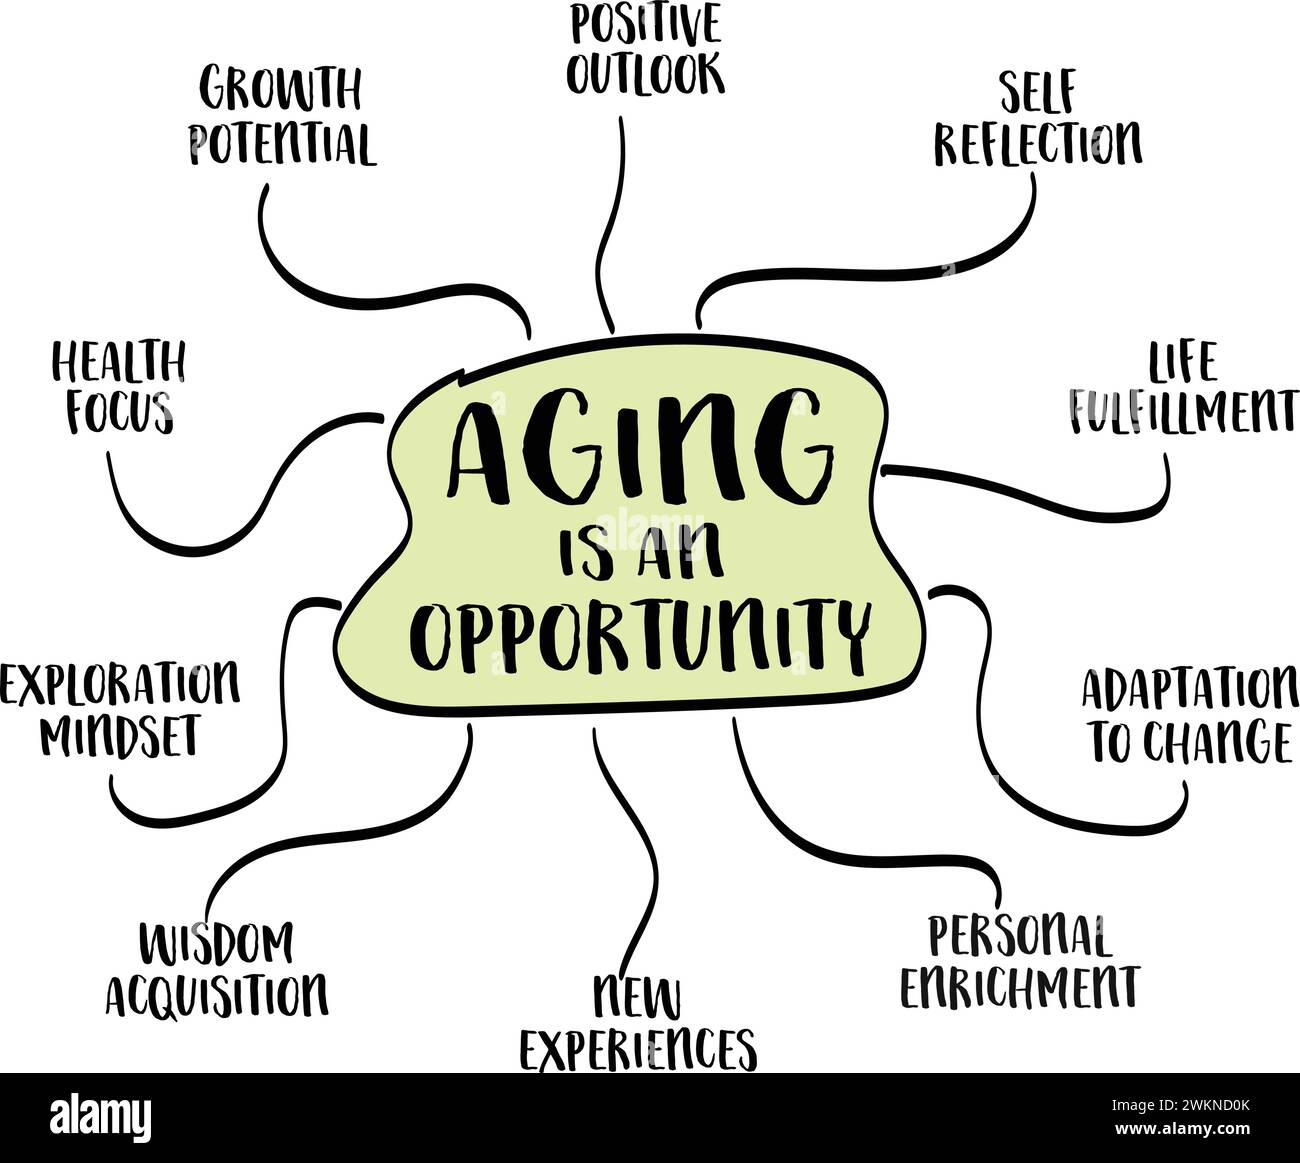 Le vieillissement est un concept d'opportunité - infographie ou croquis de carte mentale, âge et mode de vie sain Illustration de Vecteur